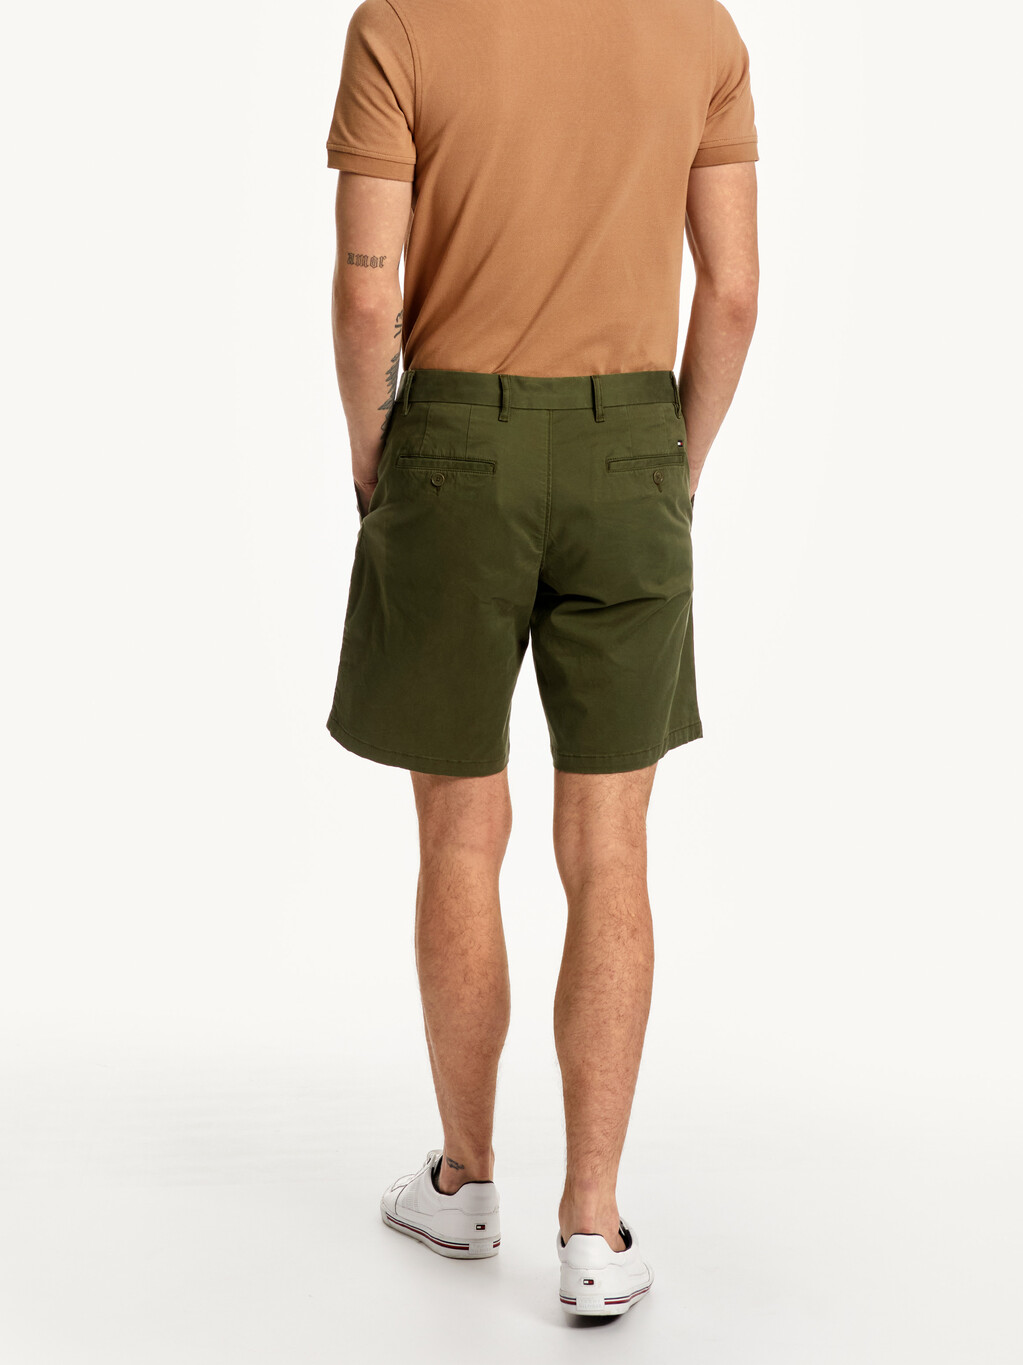 1985 系列 Brooklyn 斜紋短褲, Army Green, hi-res